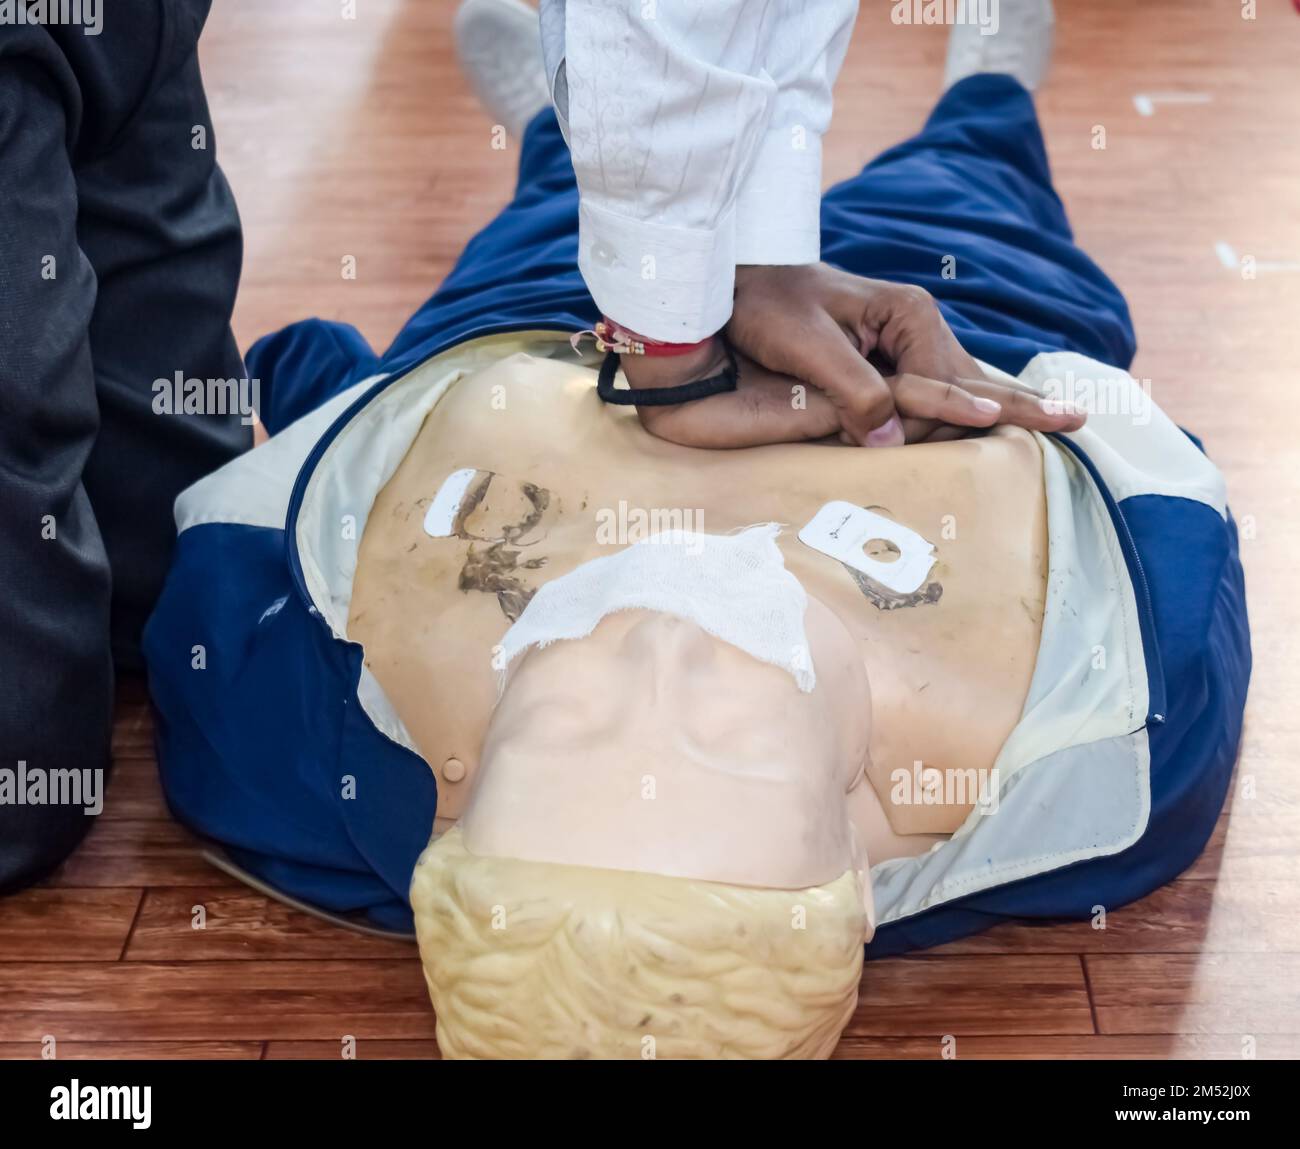 Le mannequin humain se trouve sur le sol pendant la formation de premiers soins - réanimation cardio-pulmonaire. Cours de premiers soins sur le mannequin de RCP, concept de formation aux premiers soins de RCP Banque D'Images